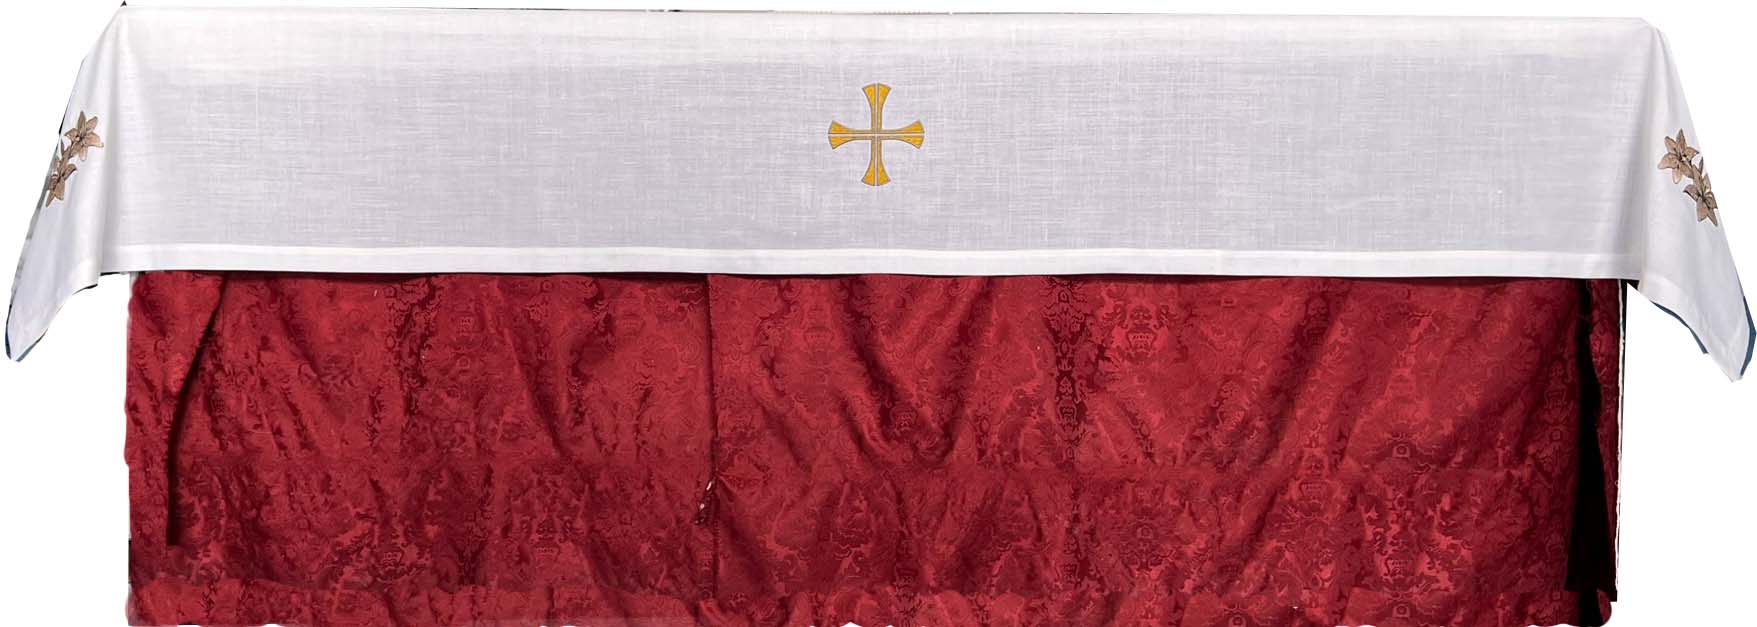 detalles-frontales-mantel-altar-blanco